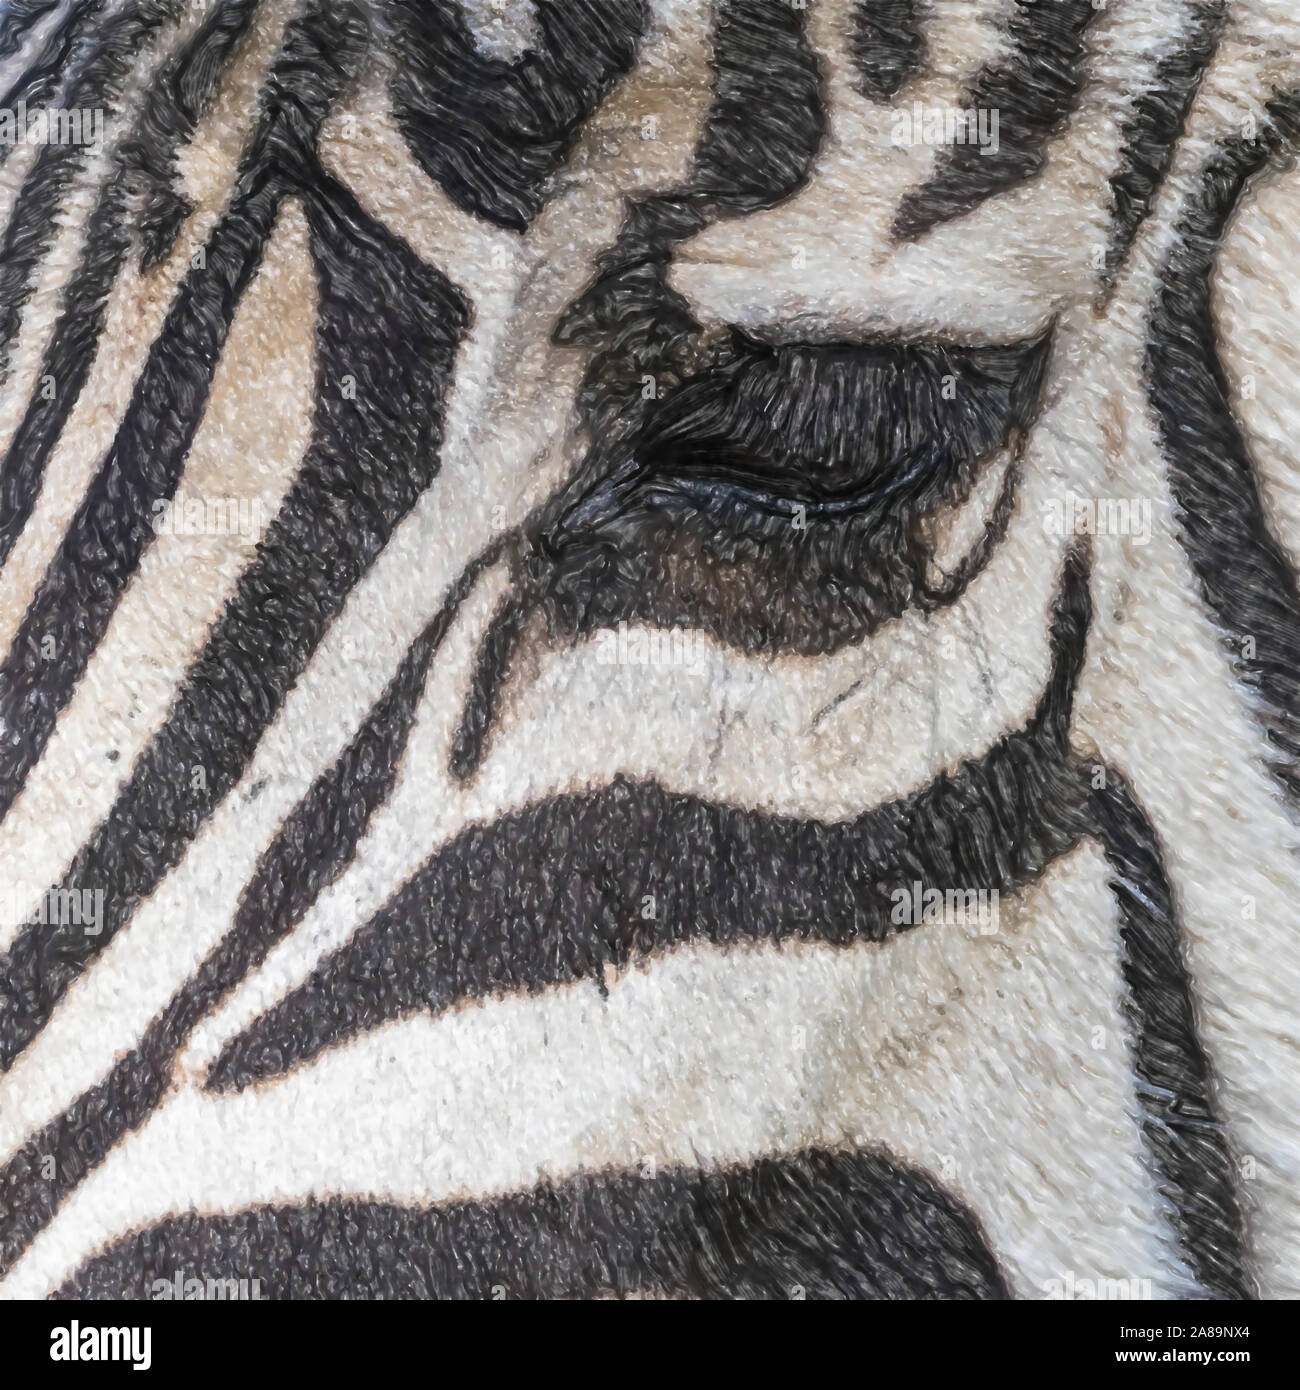 Aquarell Bild: Nahaufnahme des Gesichts eines Zebras, wissenschaftlicher Name Equus Zebra, mit den Augen des Tieres, die Tier- und Pflanzenwelt Stockfoto